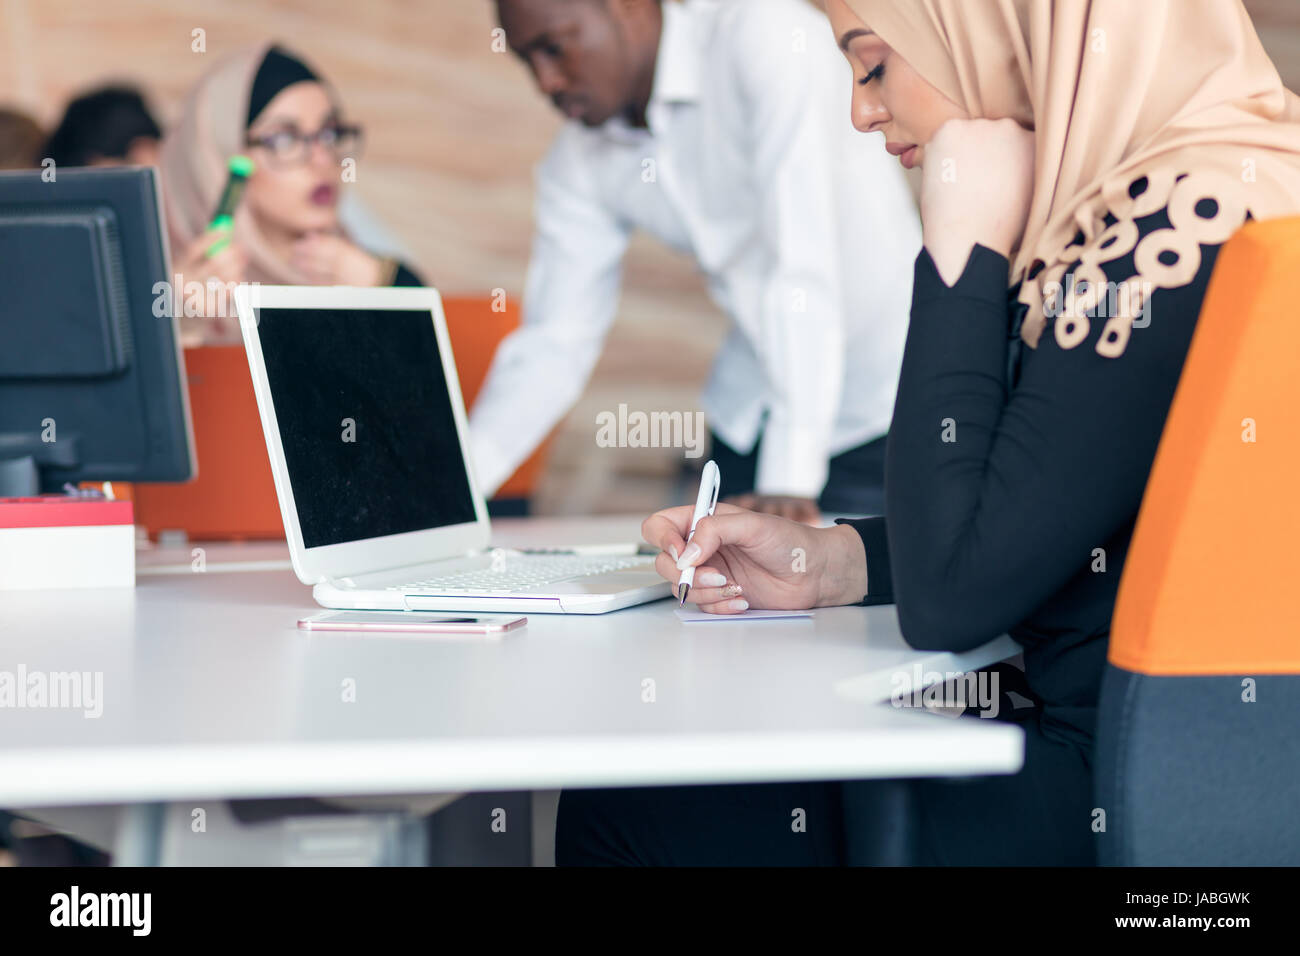 Junge arabische Geschäftsfrau tragen Hijab, arbeiten in ihrem Start-up-Büro. Stockfoto